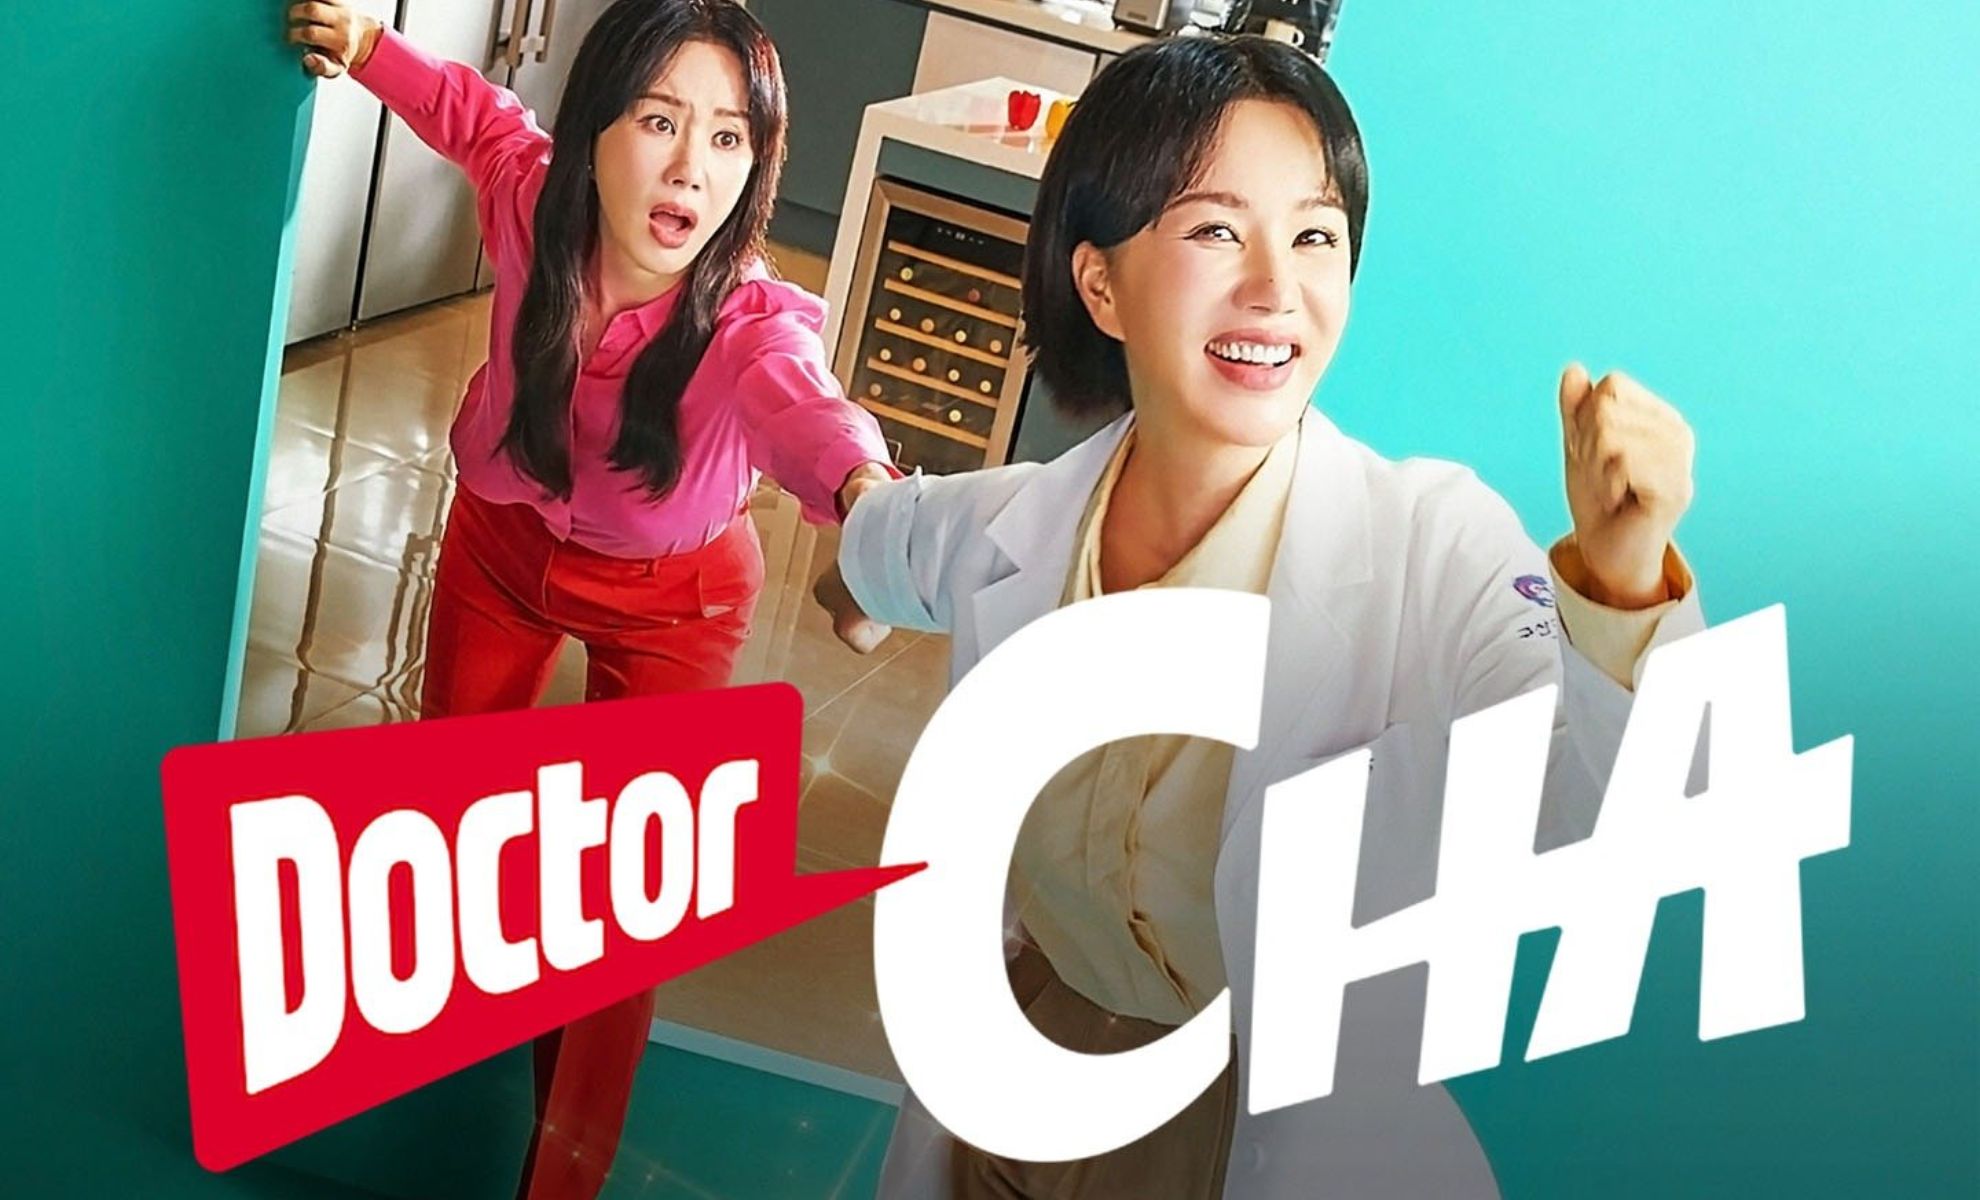 Doctor Cha la série coréenne qui fait fureur sur Netflix !